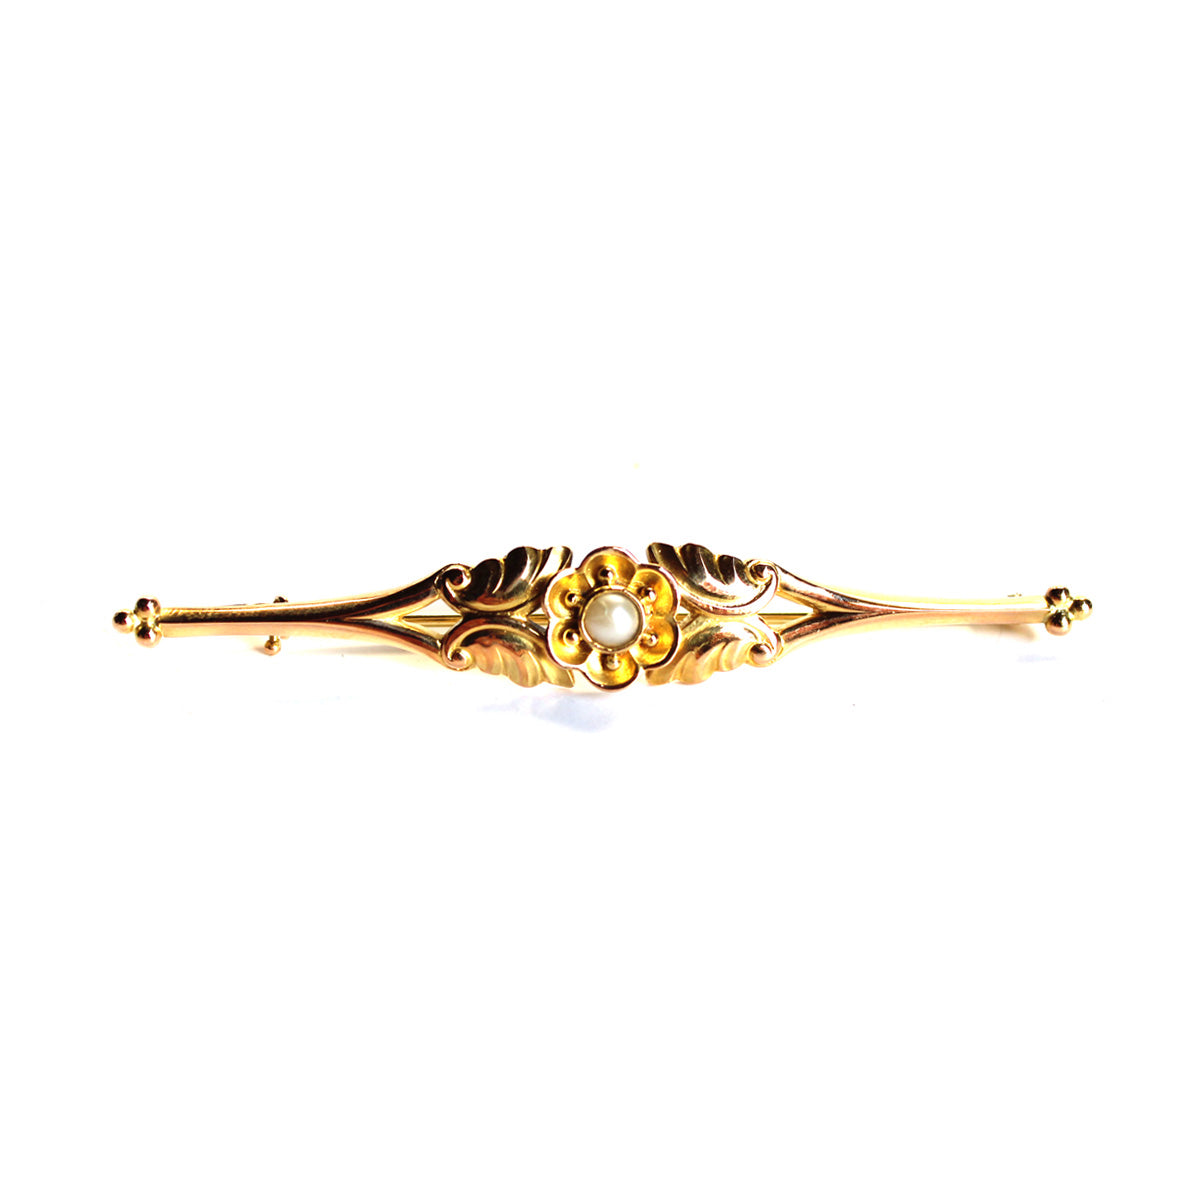 Klassisk guld broche fra Georg Jensen udført i 18k guld